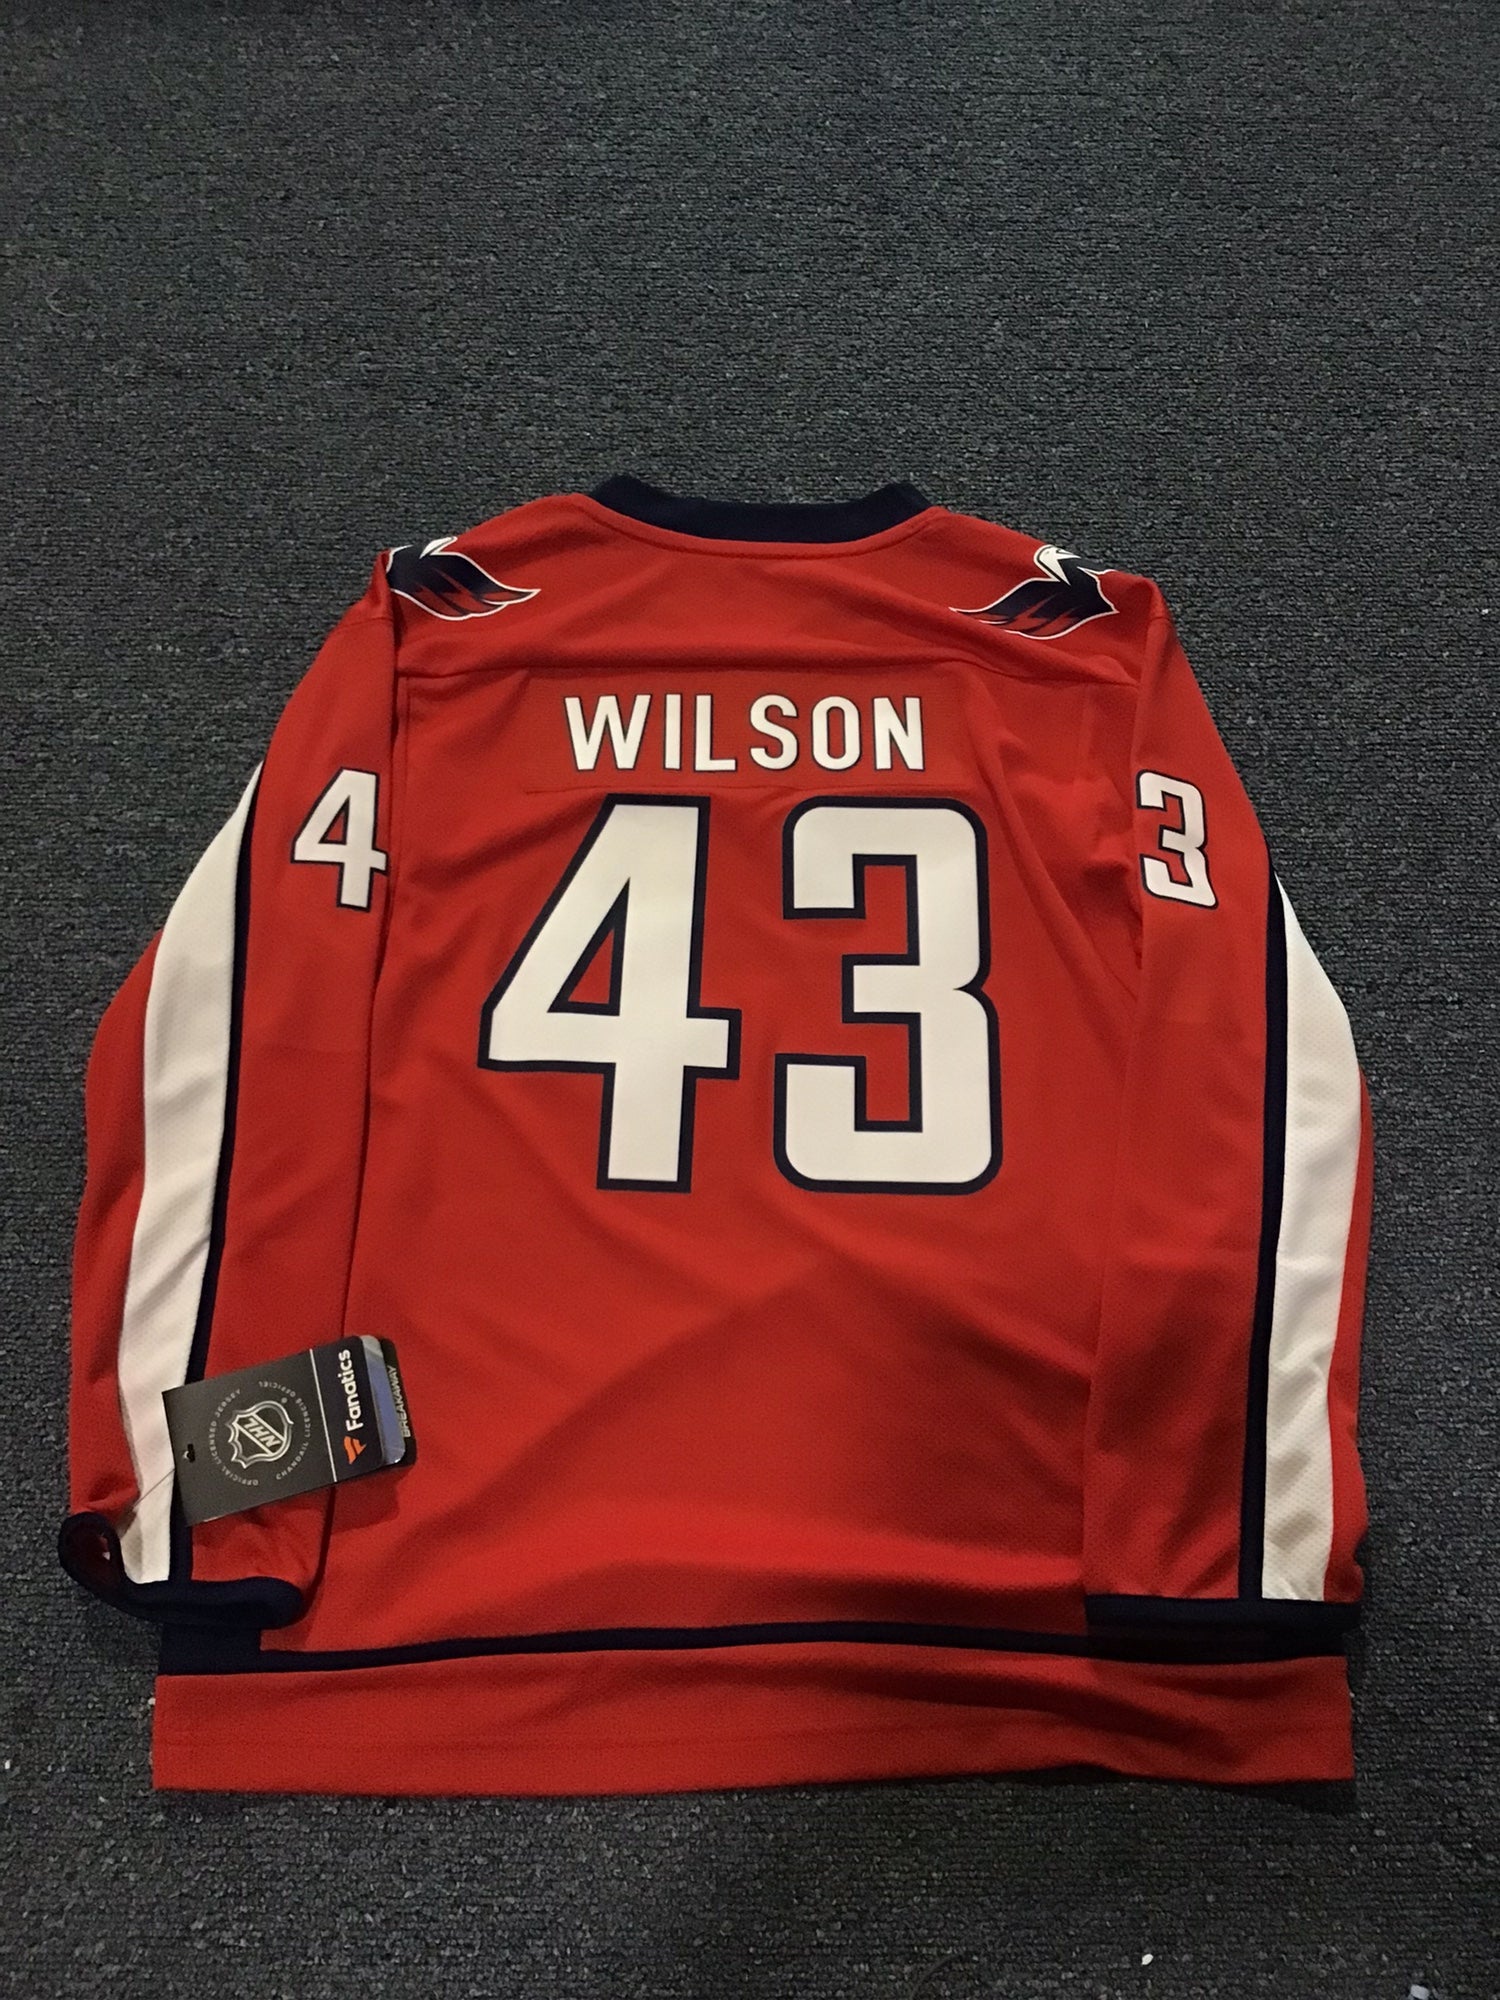 New With Tags Washington Capitals Men's XL Fanatics Jersey #43 Wilson